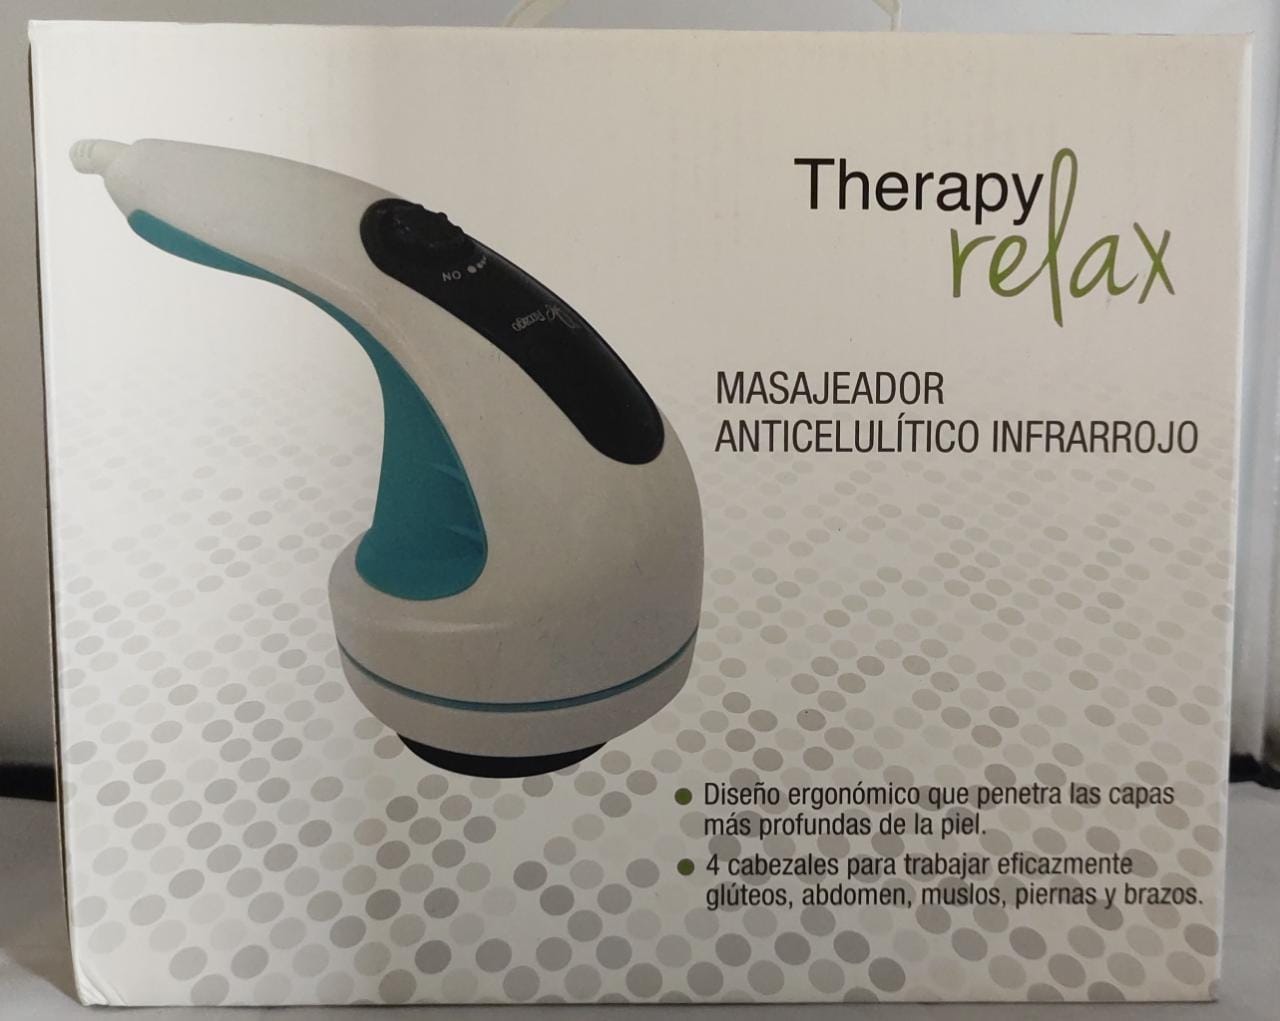 Masajeador anticelulítico infrarrojo therapy relax [Openbox]